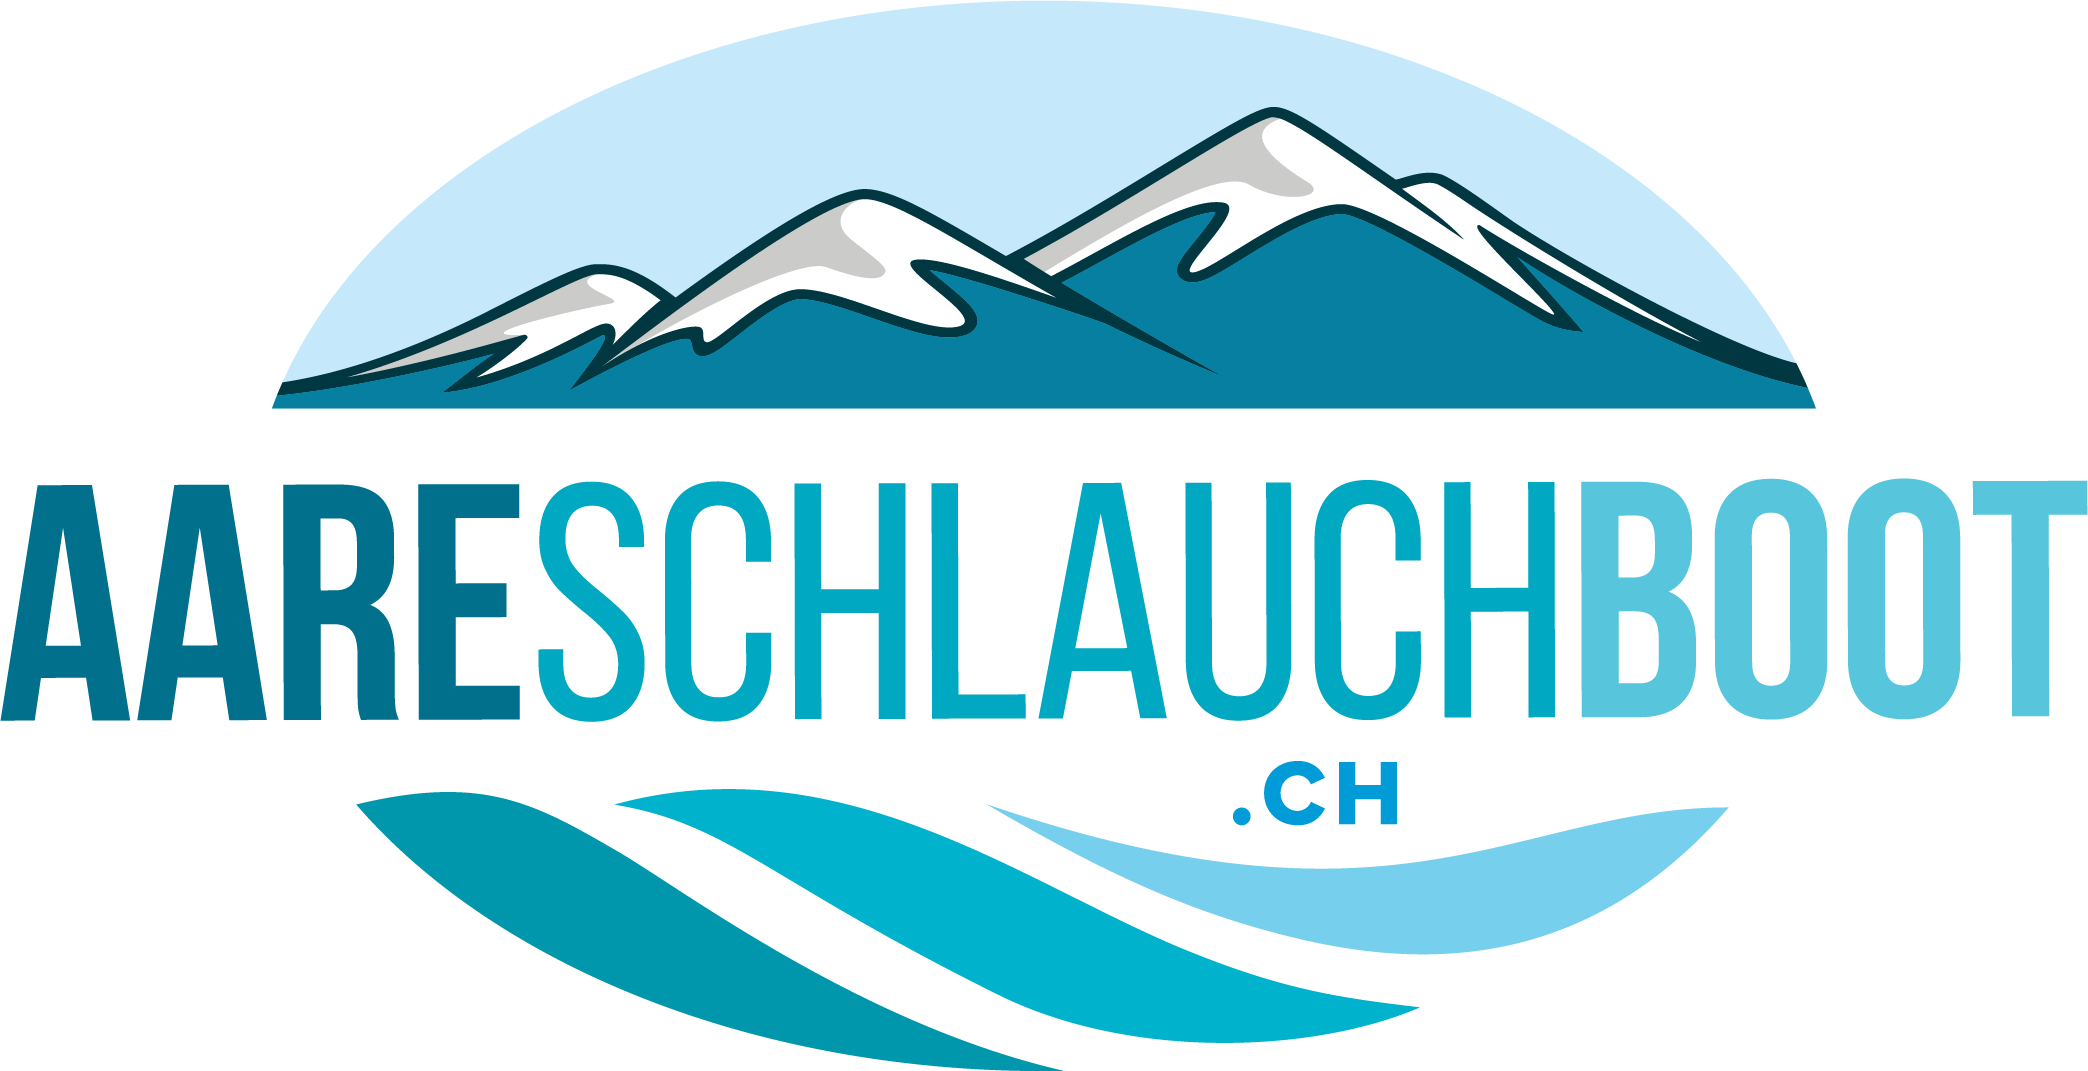 Aareschlauchboot.ch